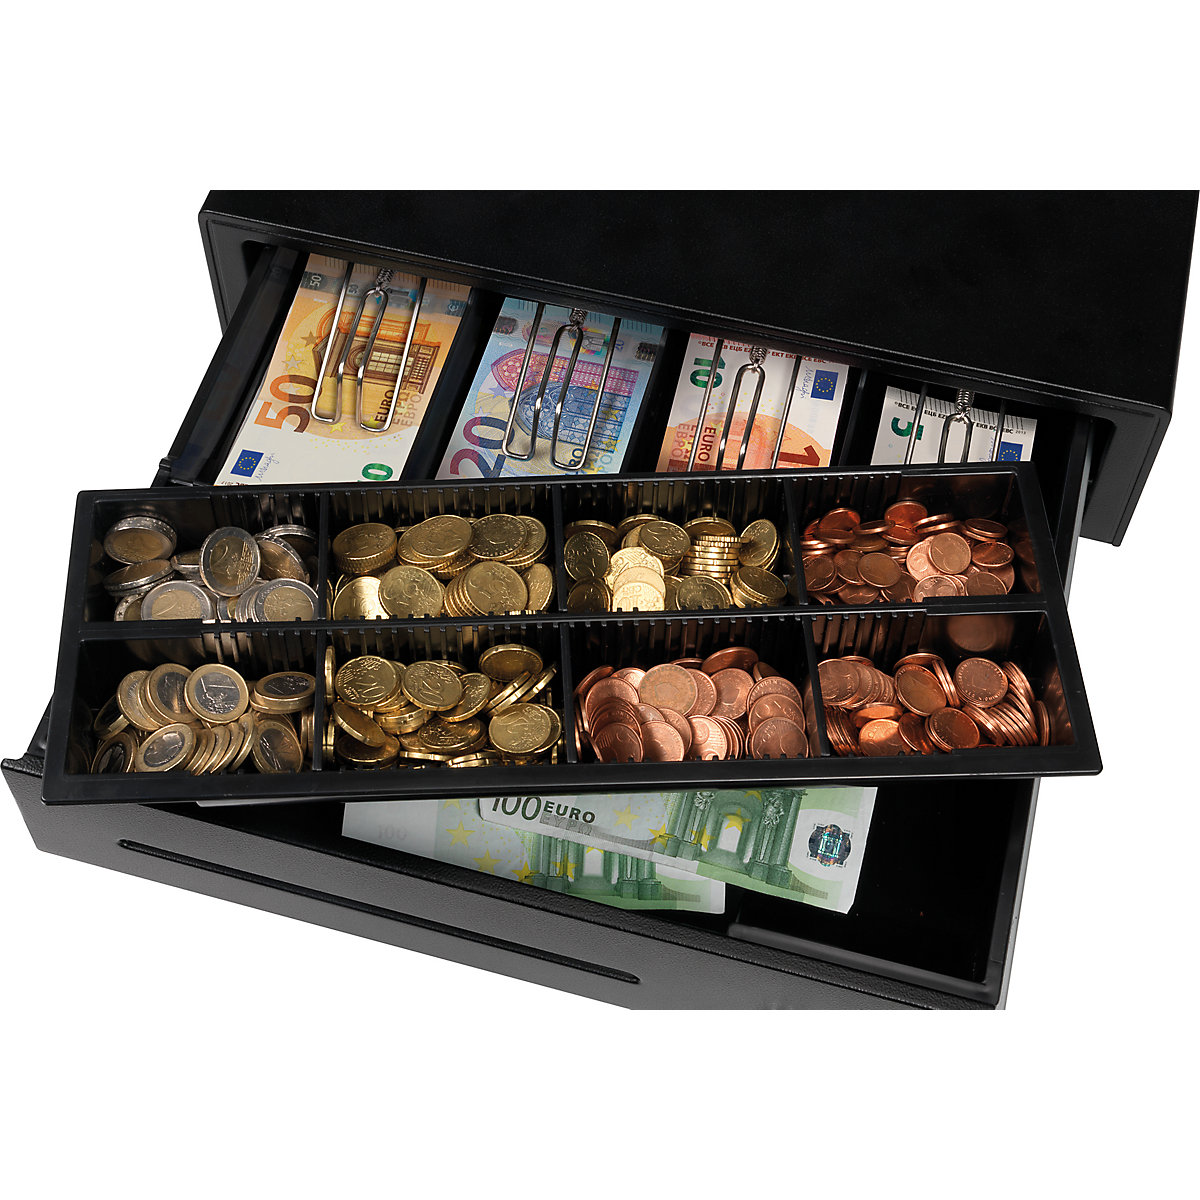 Cash drawer - Safescan